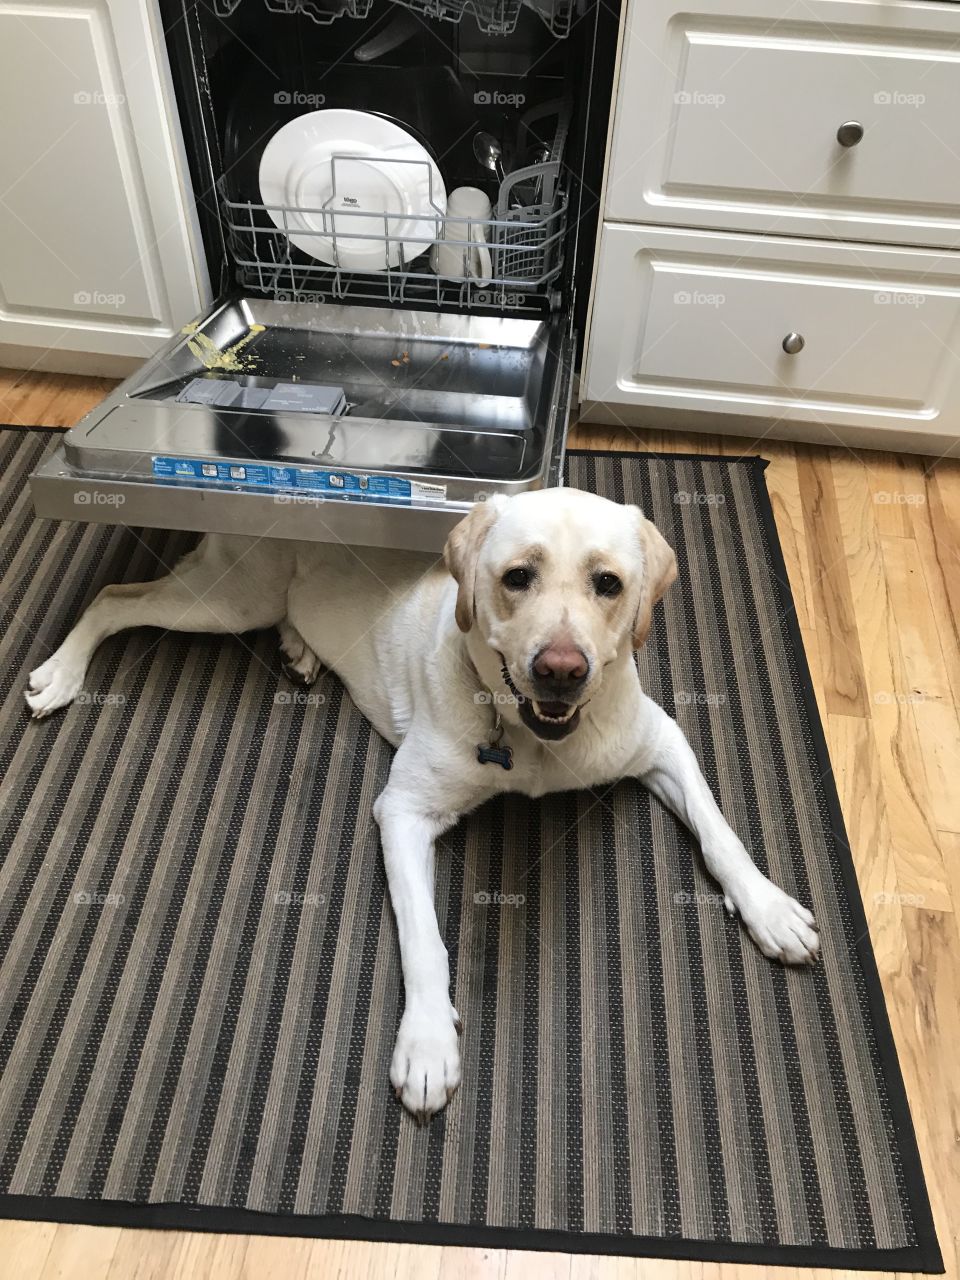 A yellow Labrador under dishwasher door 